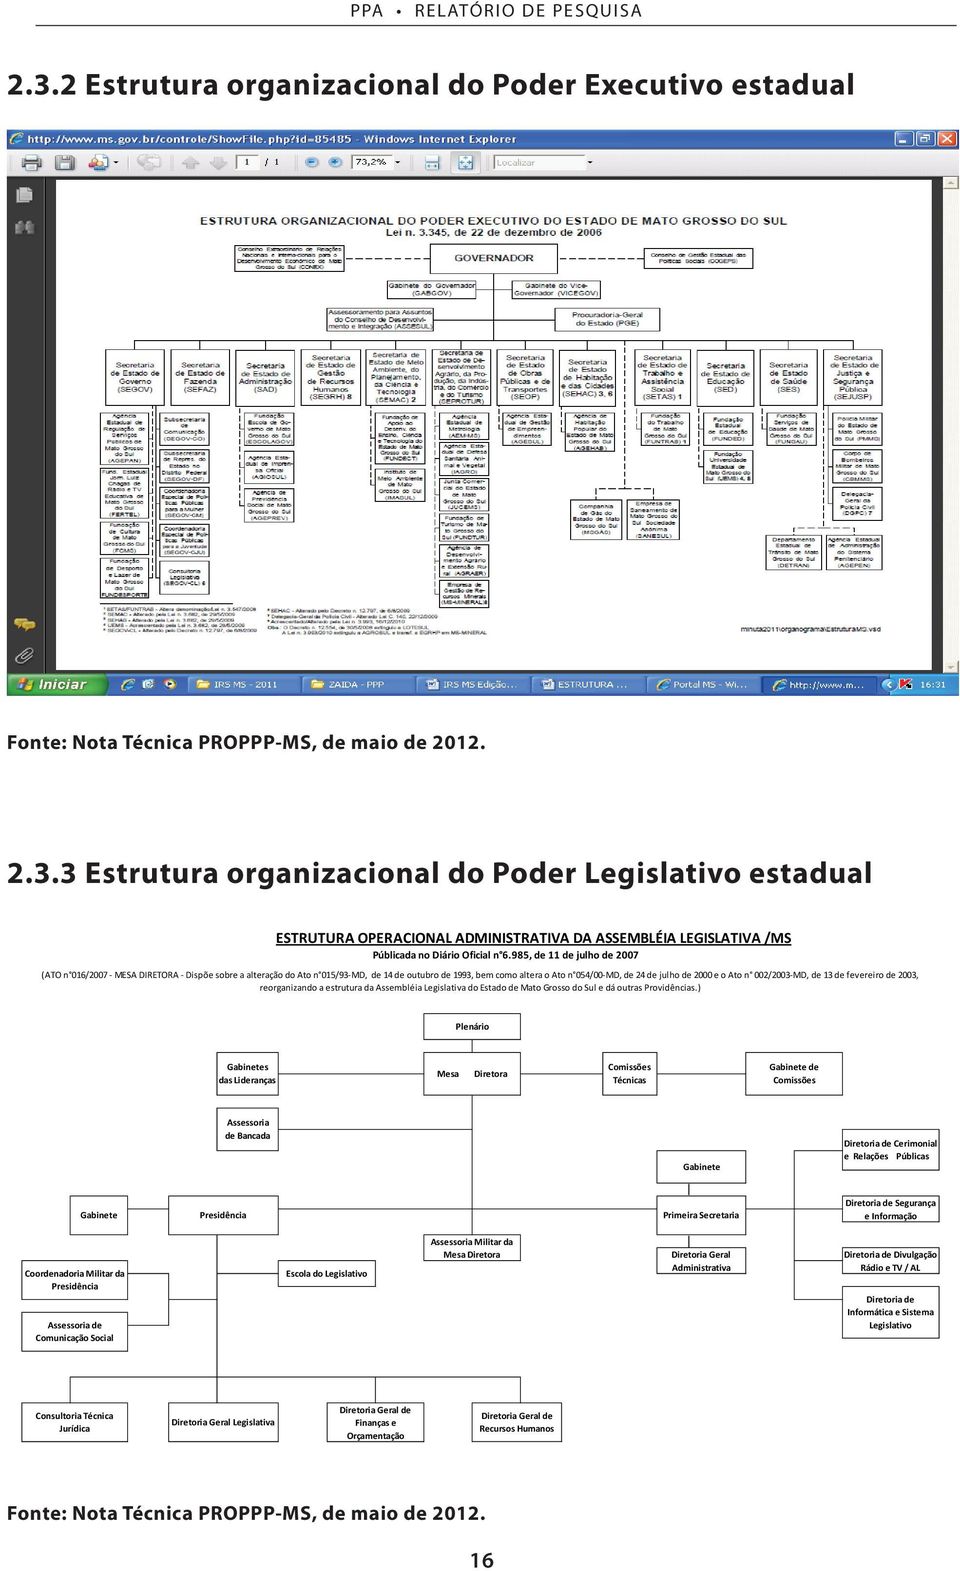 n 002/2003-MD, de 13 de fevereiro de 2003, reorganizando a estrutura da Assembléia Legislativa do Estado de Mato Grosso do Sul e dá outras Providências.